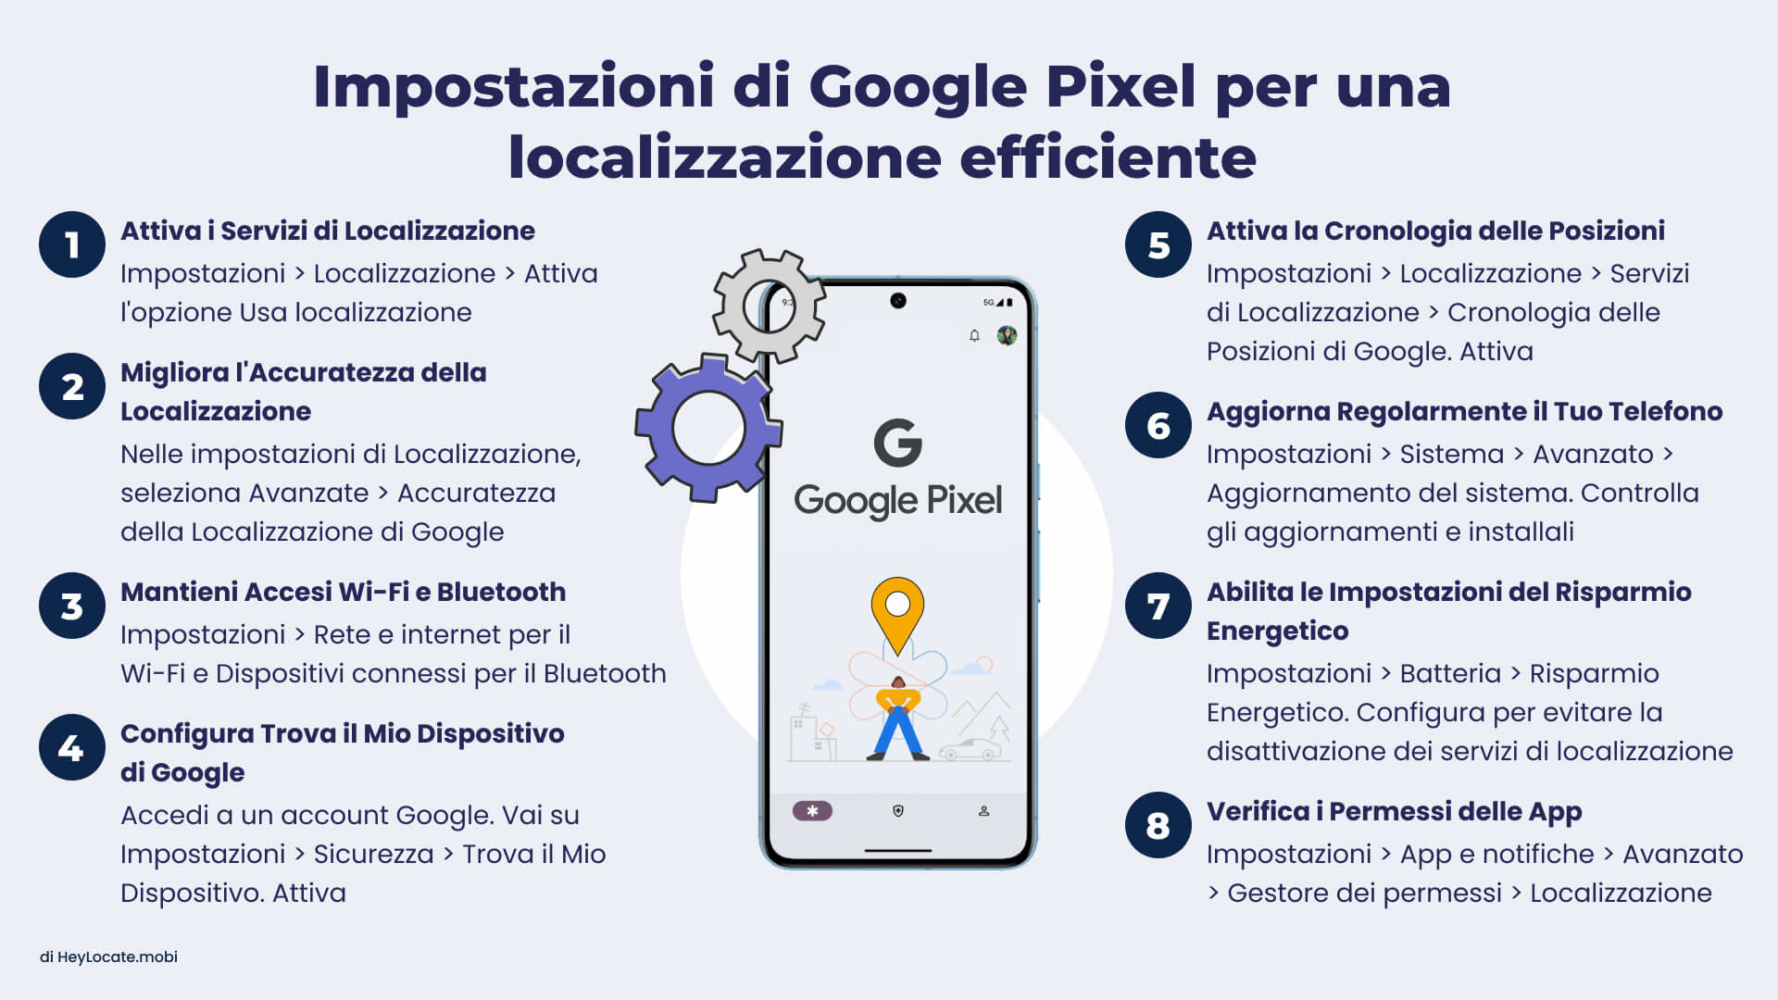 Infografica di HeyLocate.mobi che mostra le impostazioni di Google Pixel per un efficace tracciamento della posizione. Include otto suggerimenti numerati con icone e brevi istruzioni.
